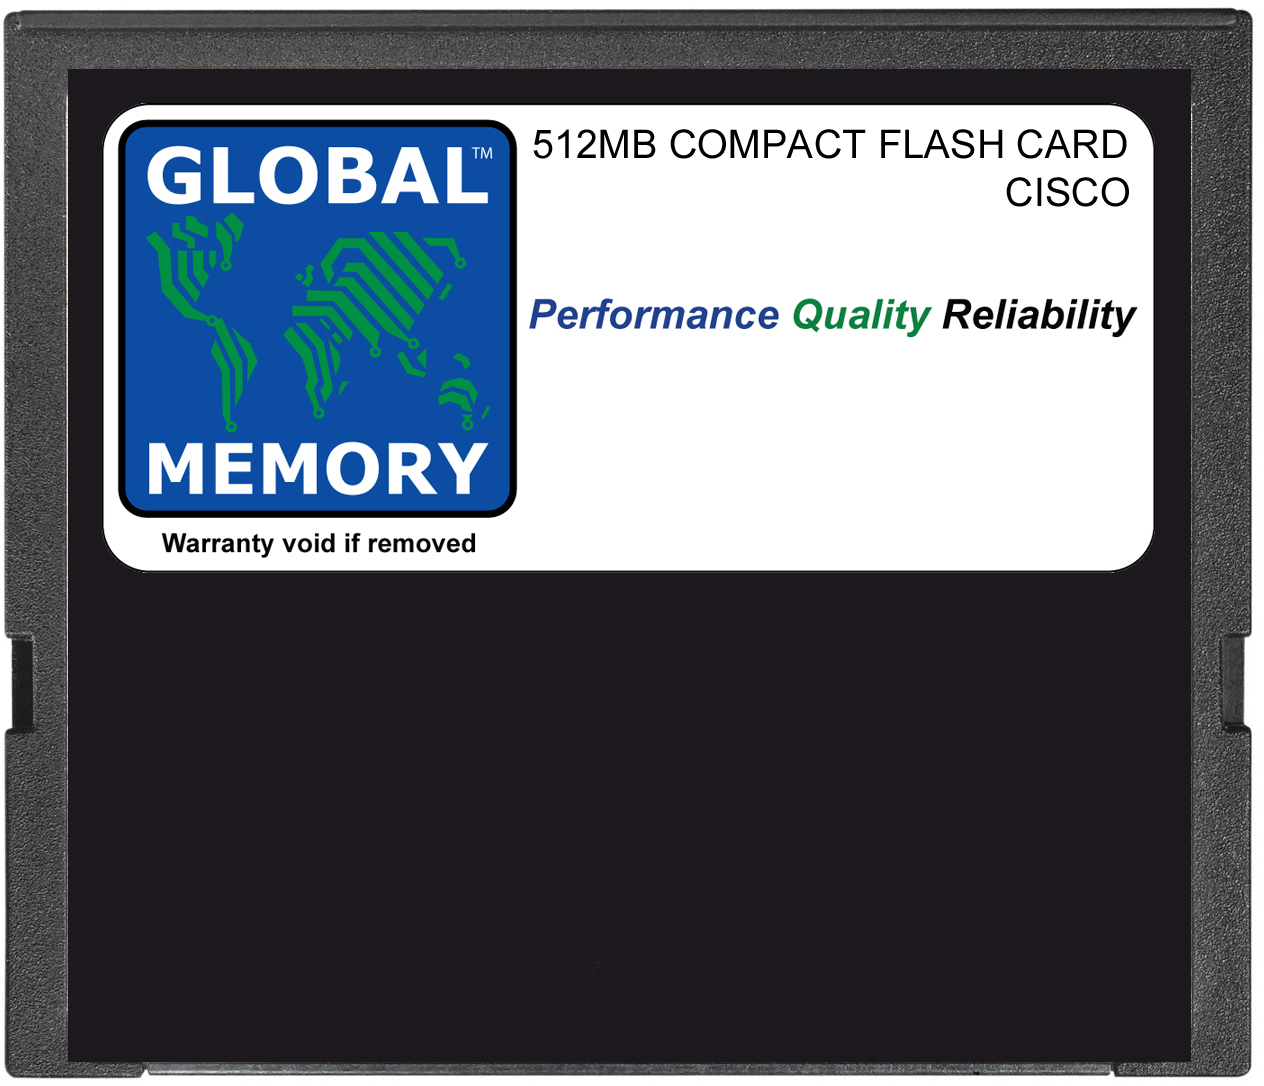 512MB COMPACT FLASH CARD MEMORY FOR CISCO ASA 5500 FIREWALL (ASA5500-CF-512MB) - Click Image to Close